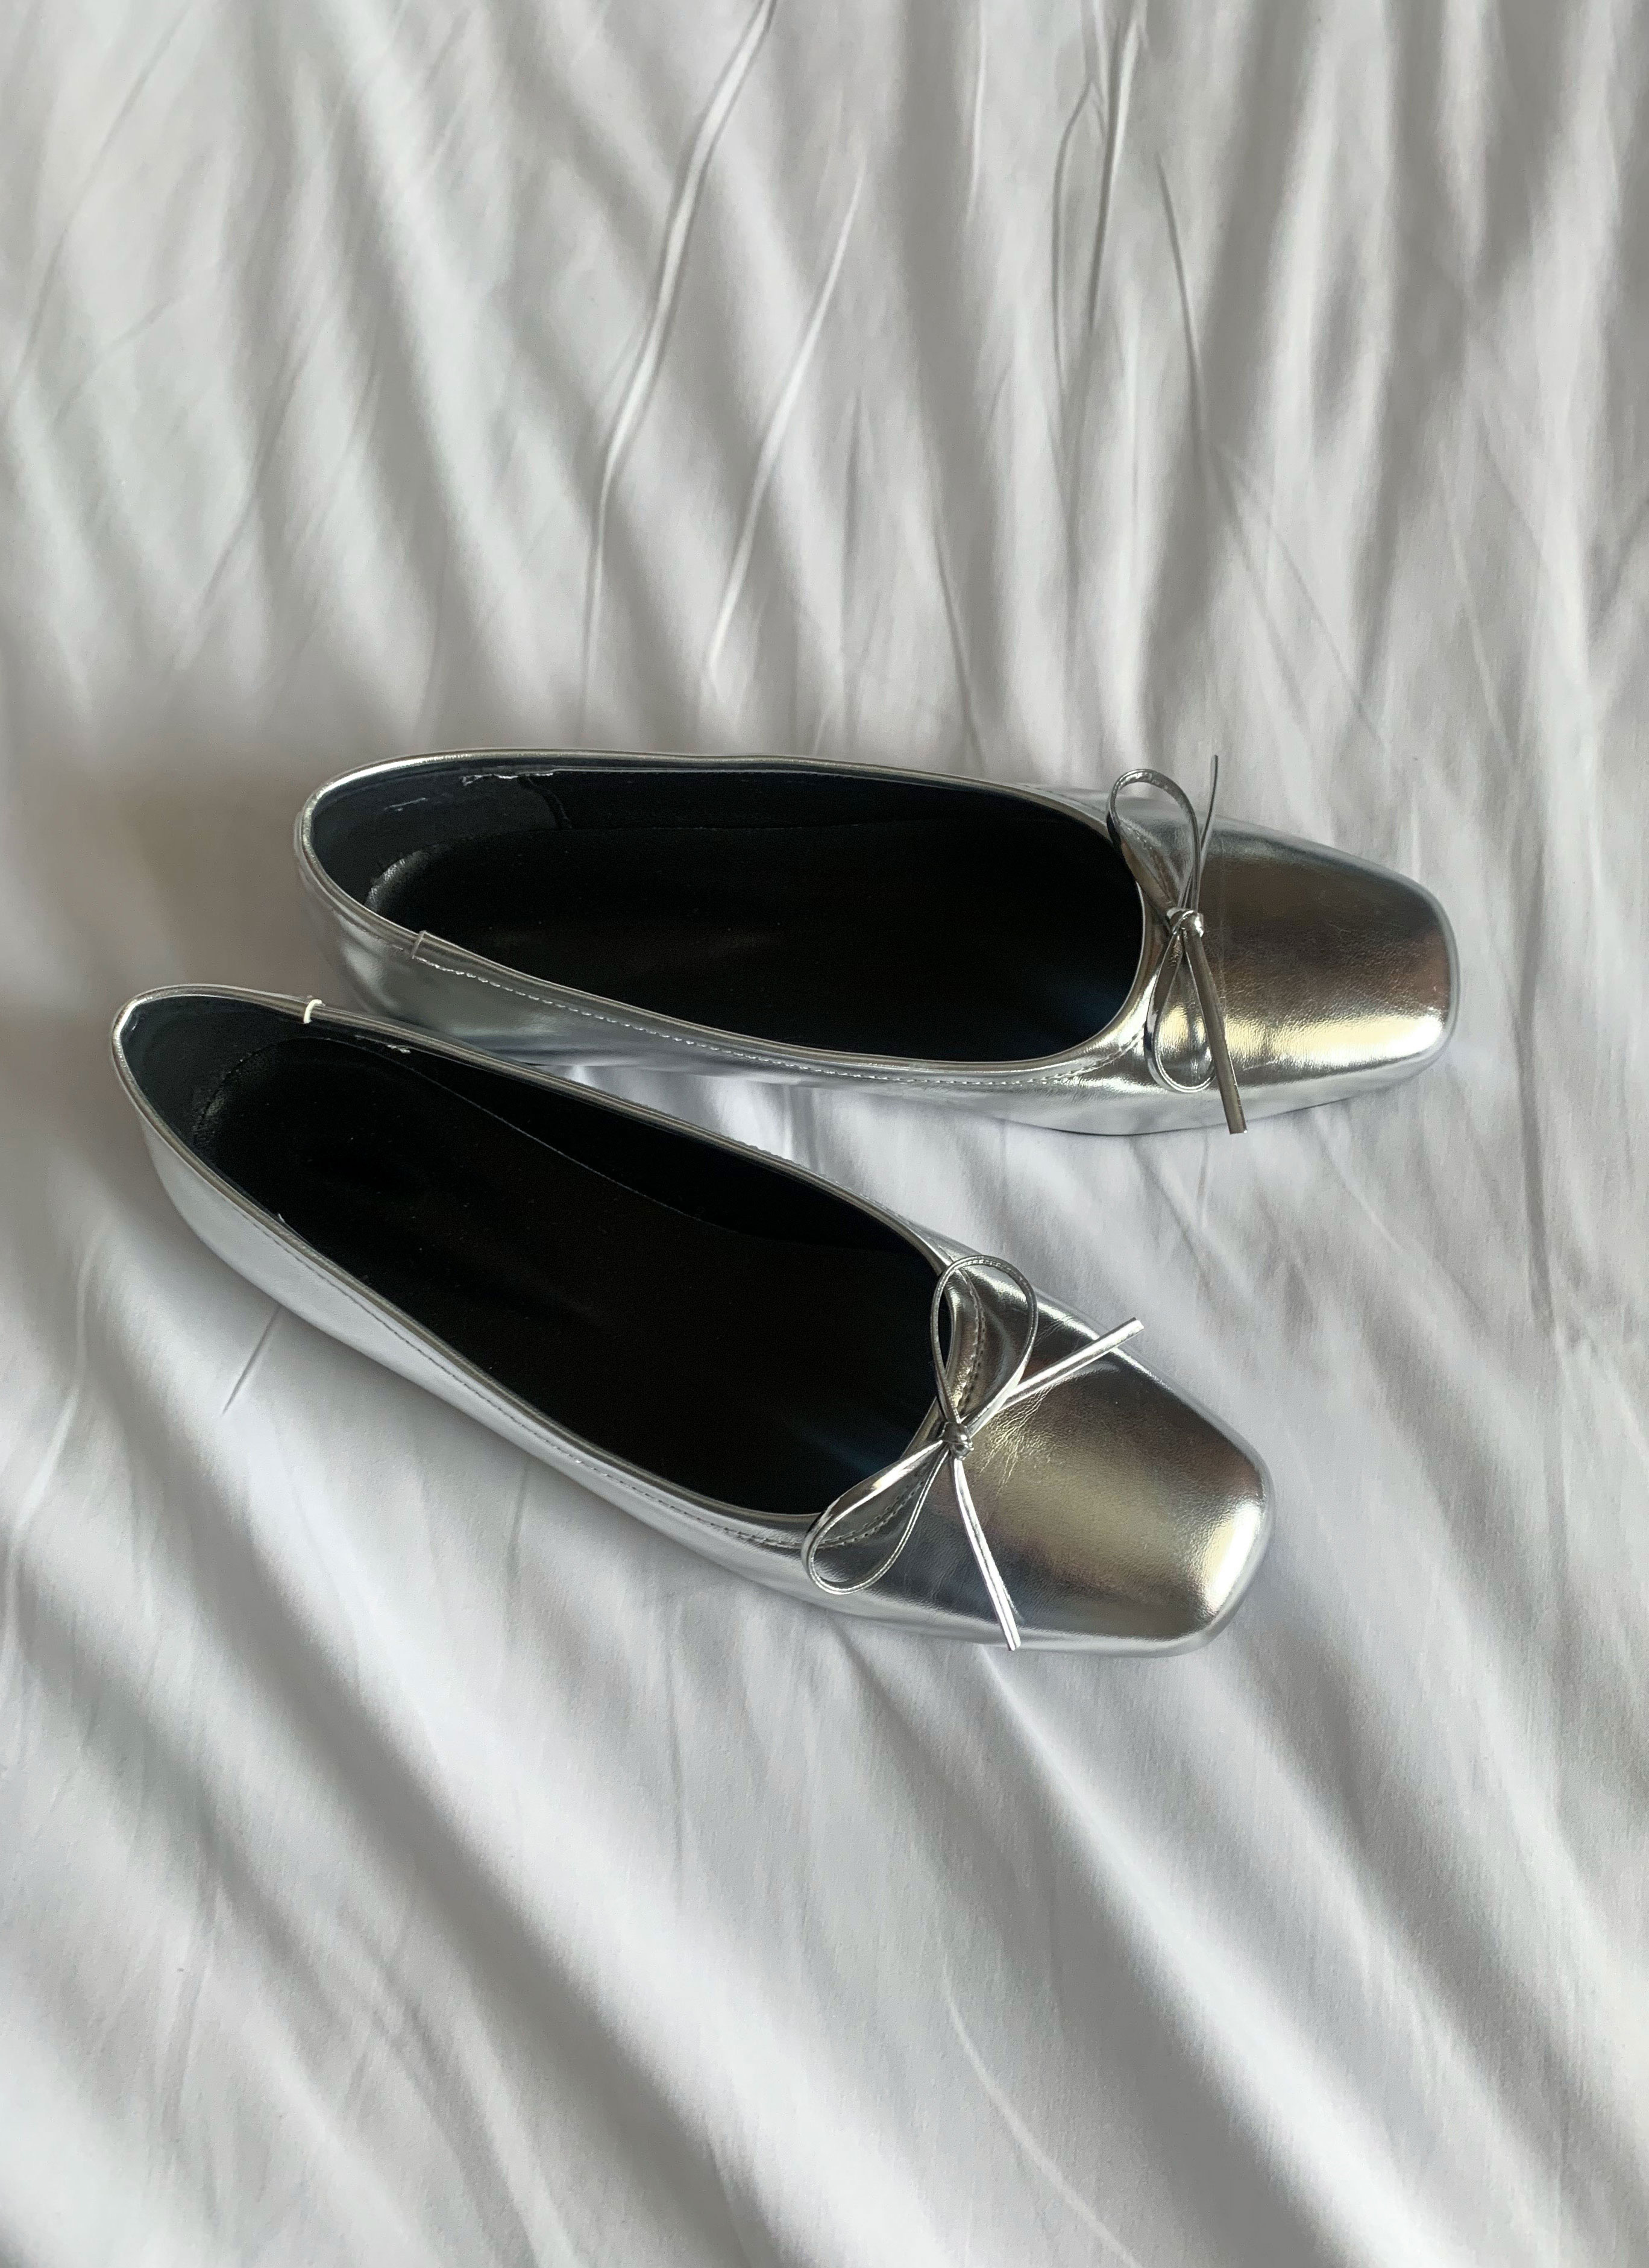 셀린 스퀘어토 리본 플랫 슈즈_selin flat shoes